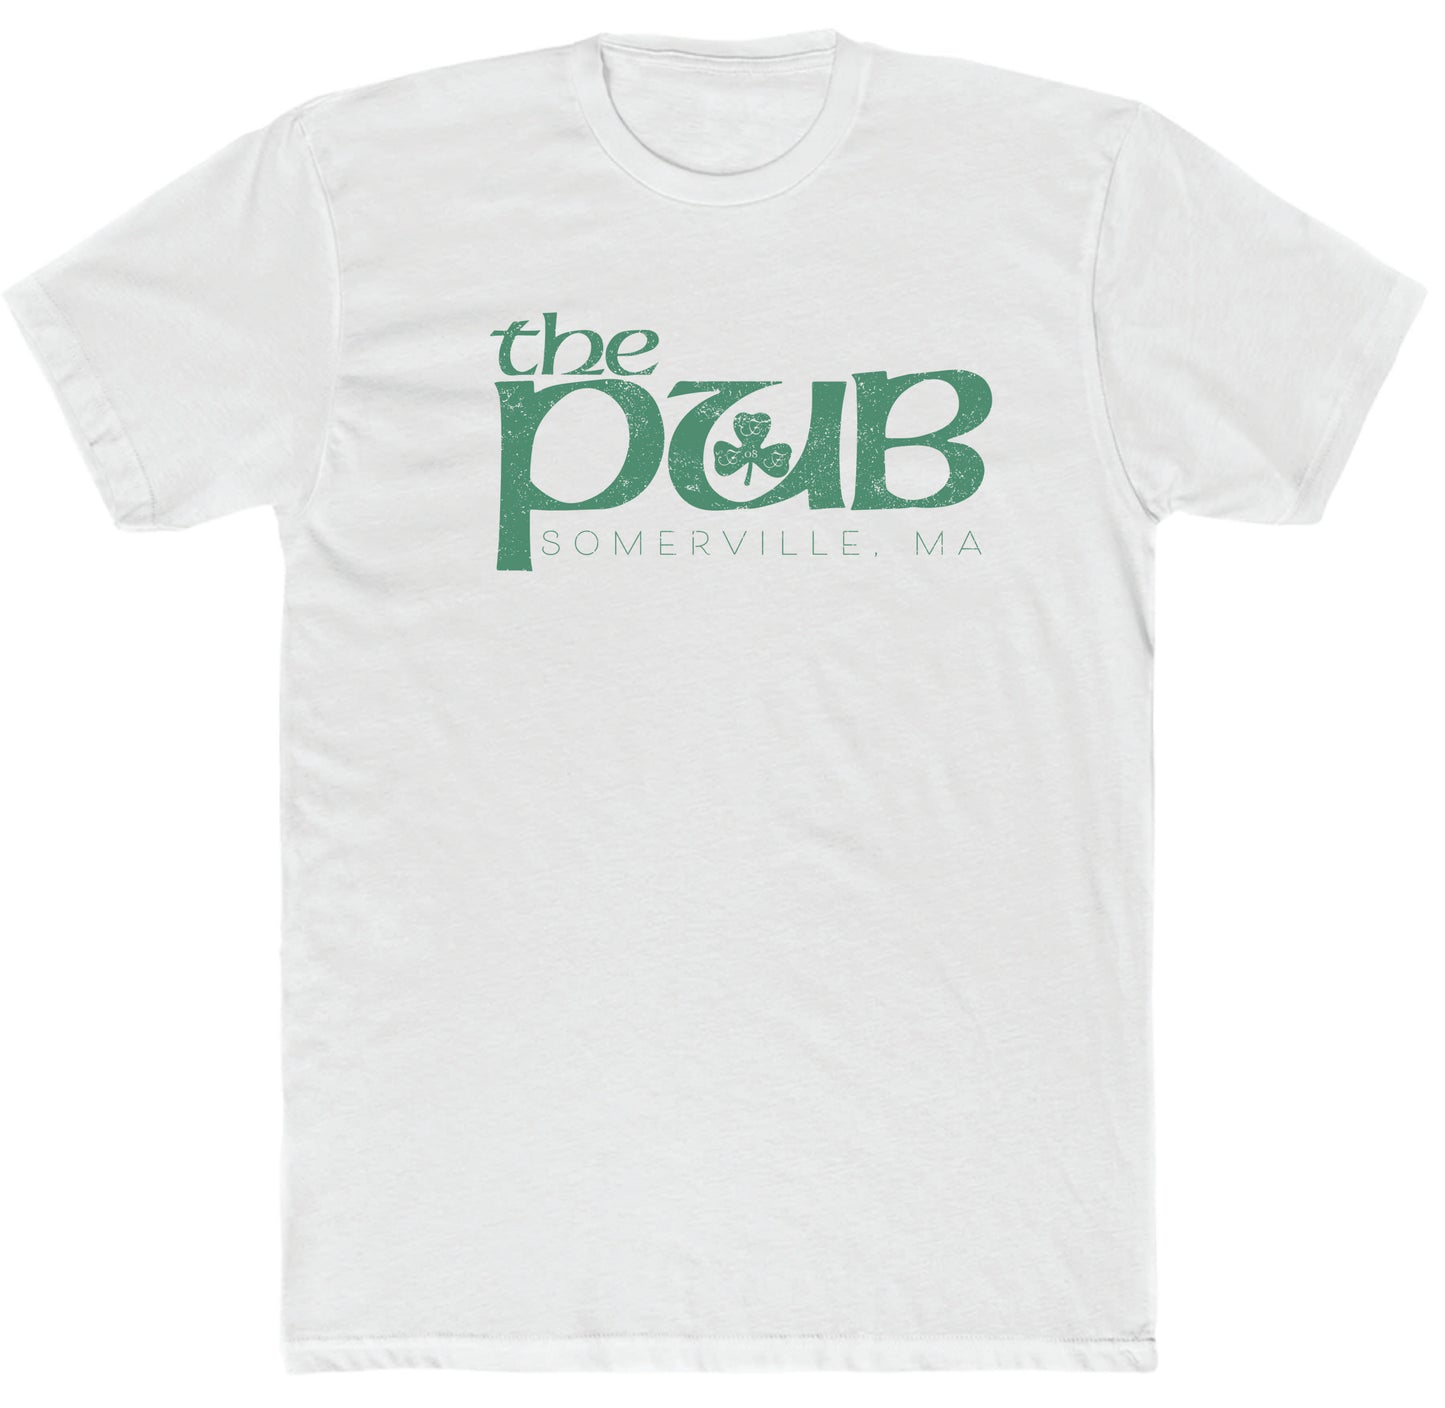 The Pub - Big Pub Unisex Cotton T-Shirt